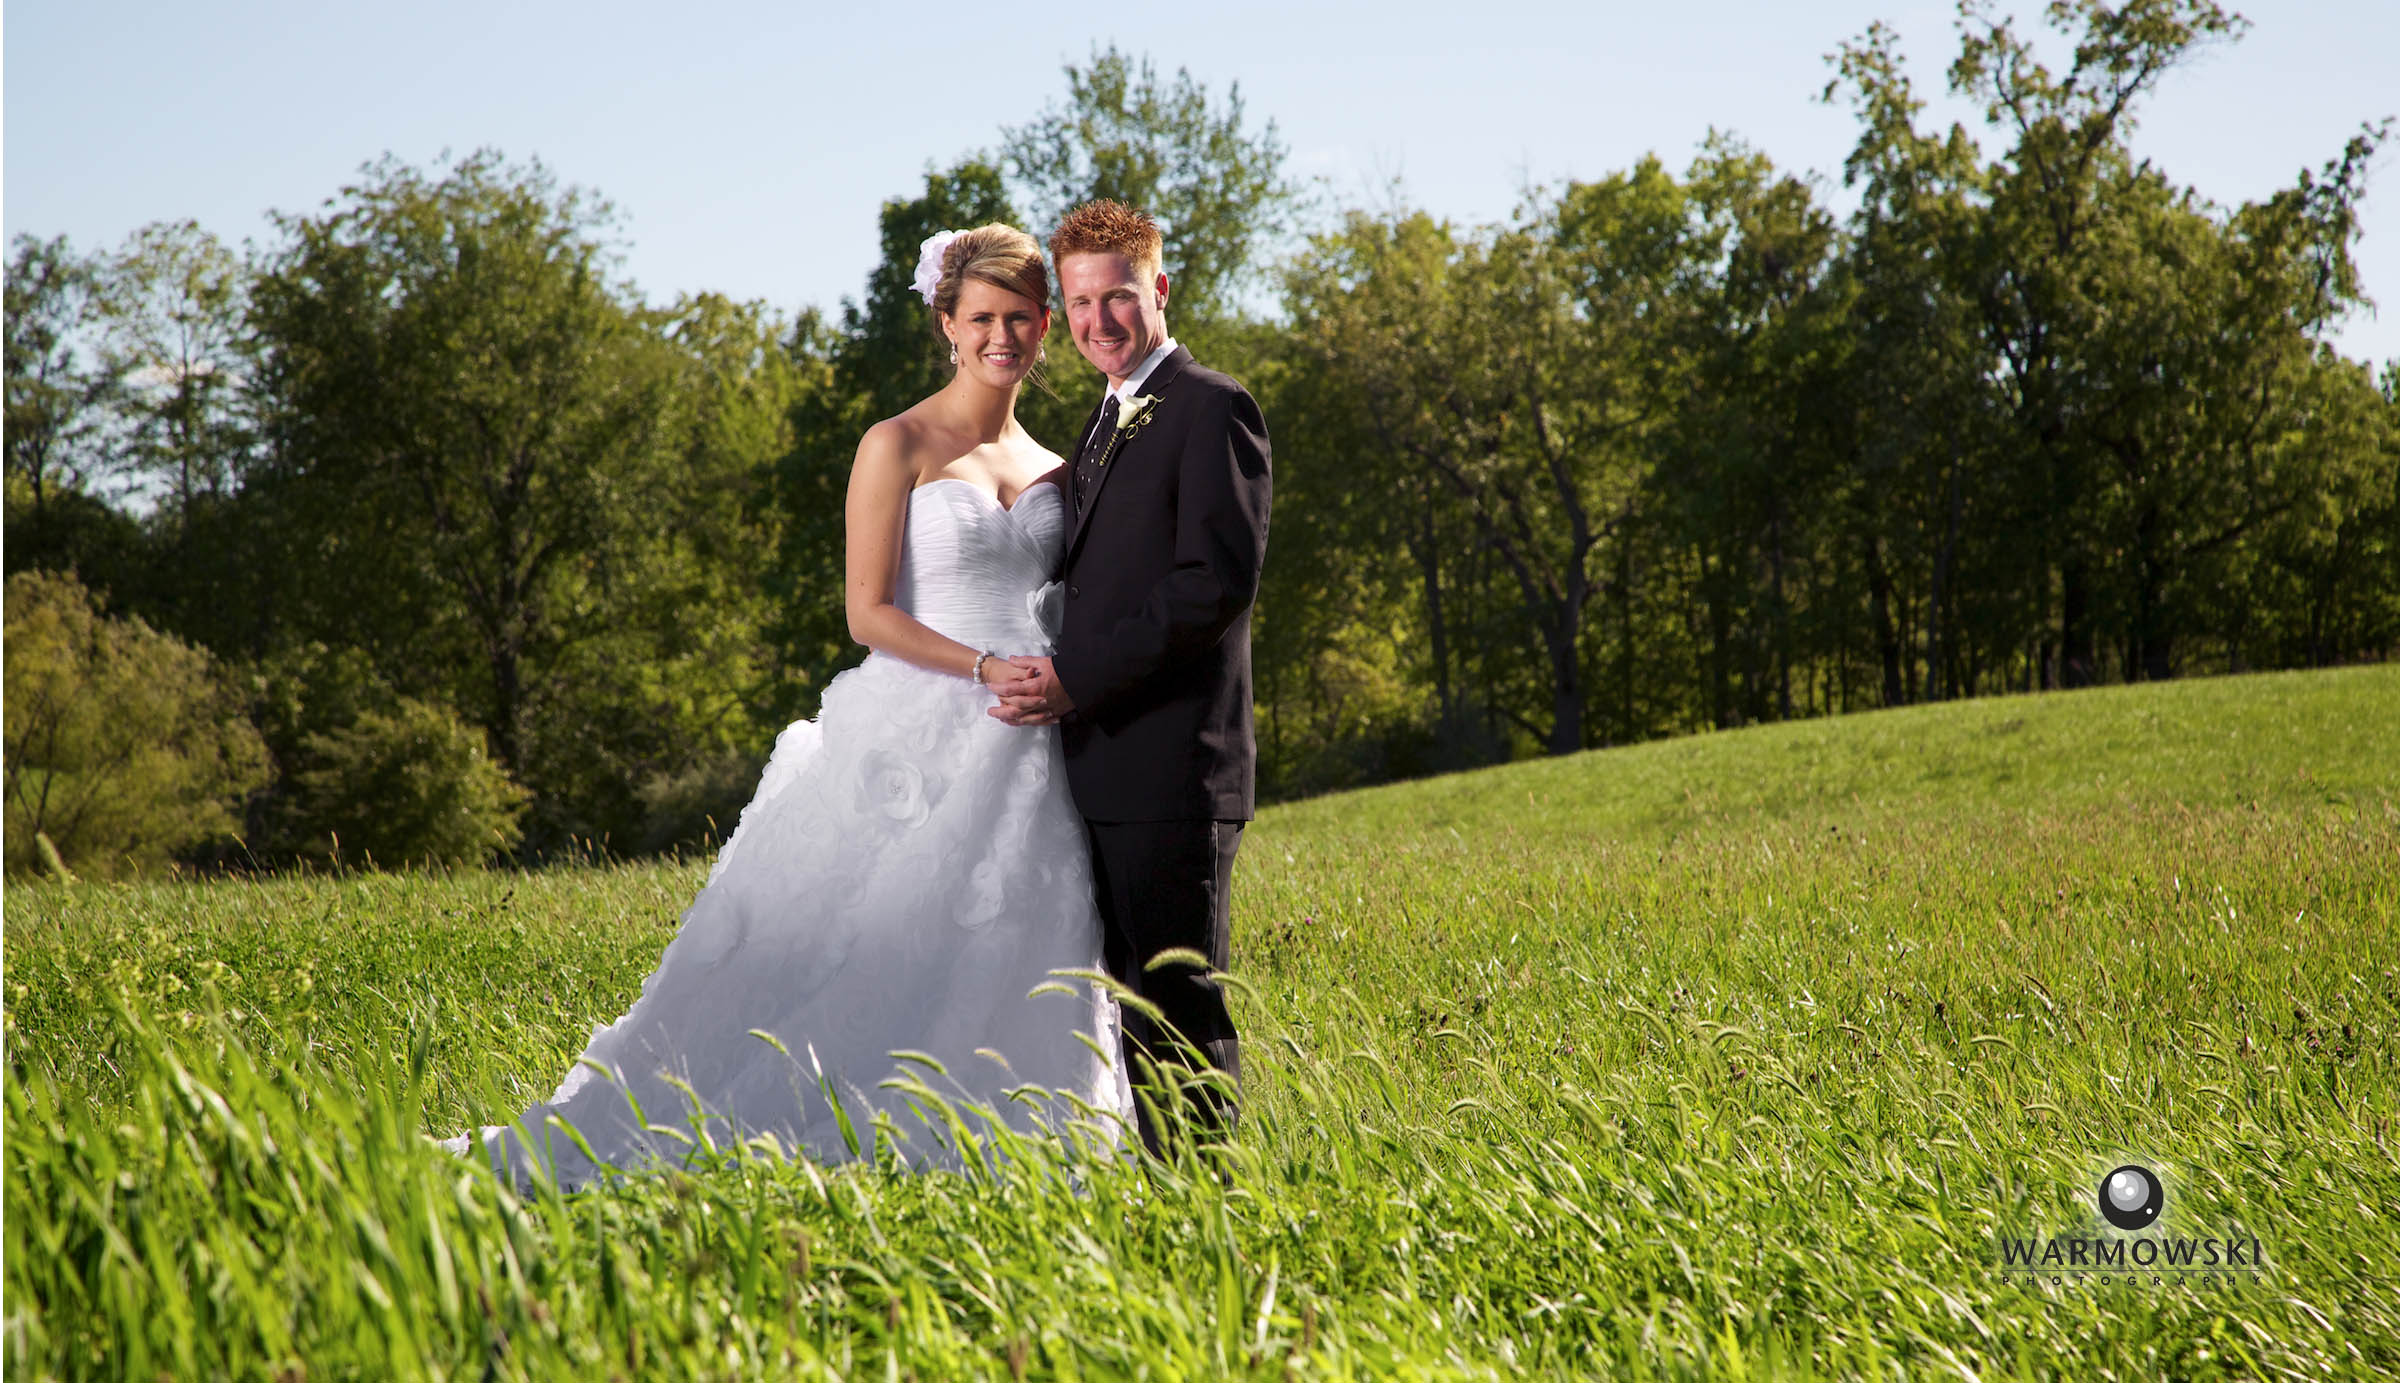 Ashley & Scott married September 2012 in Jacksonville.